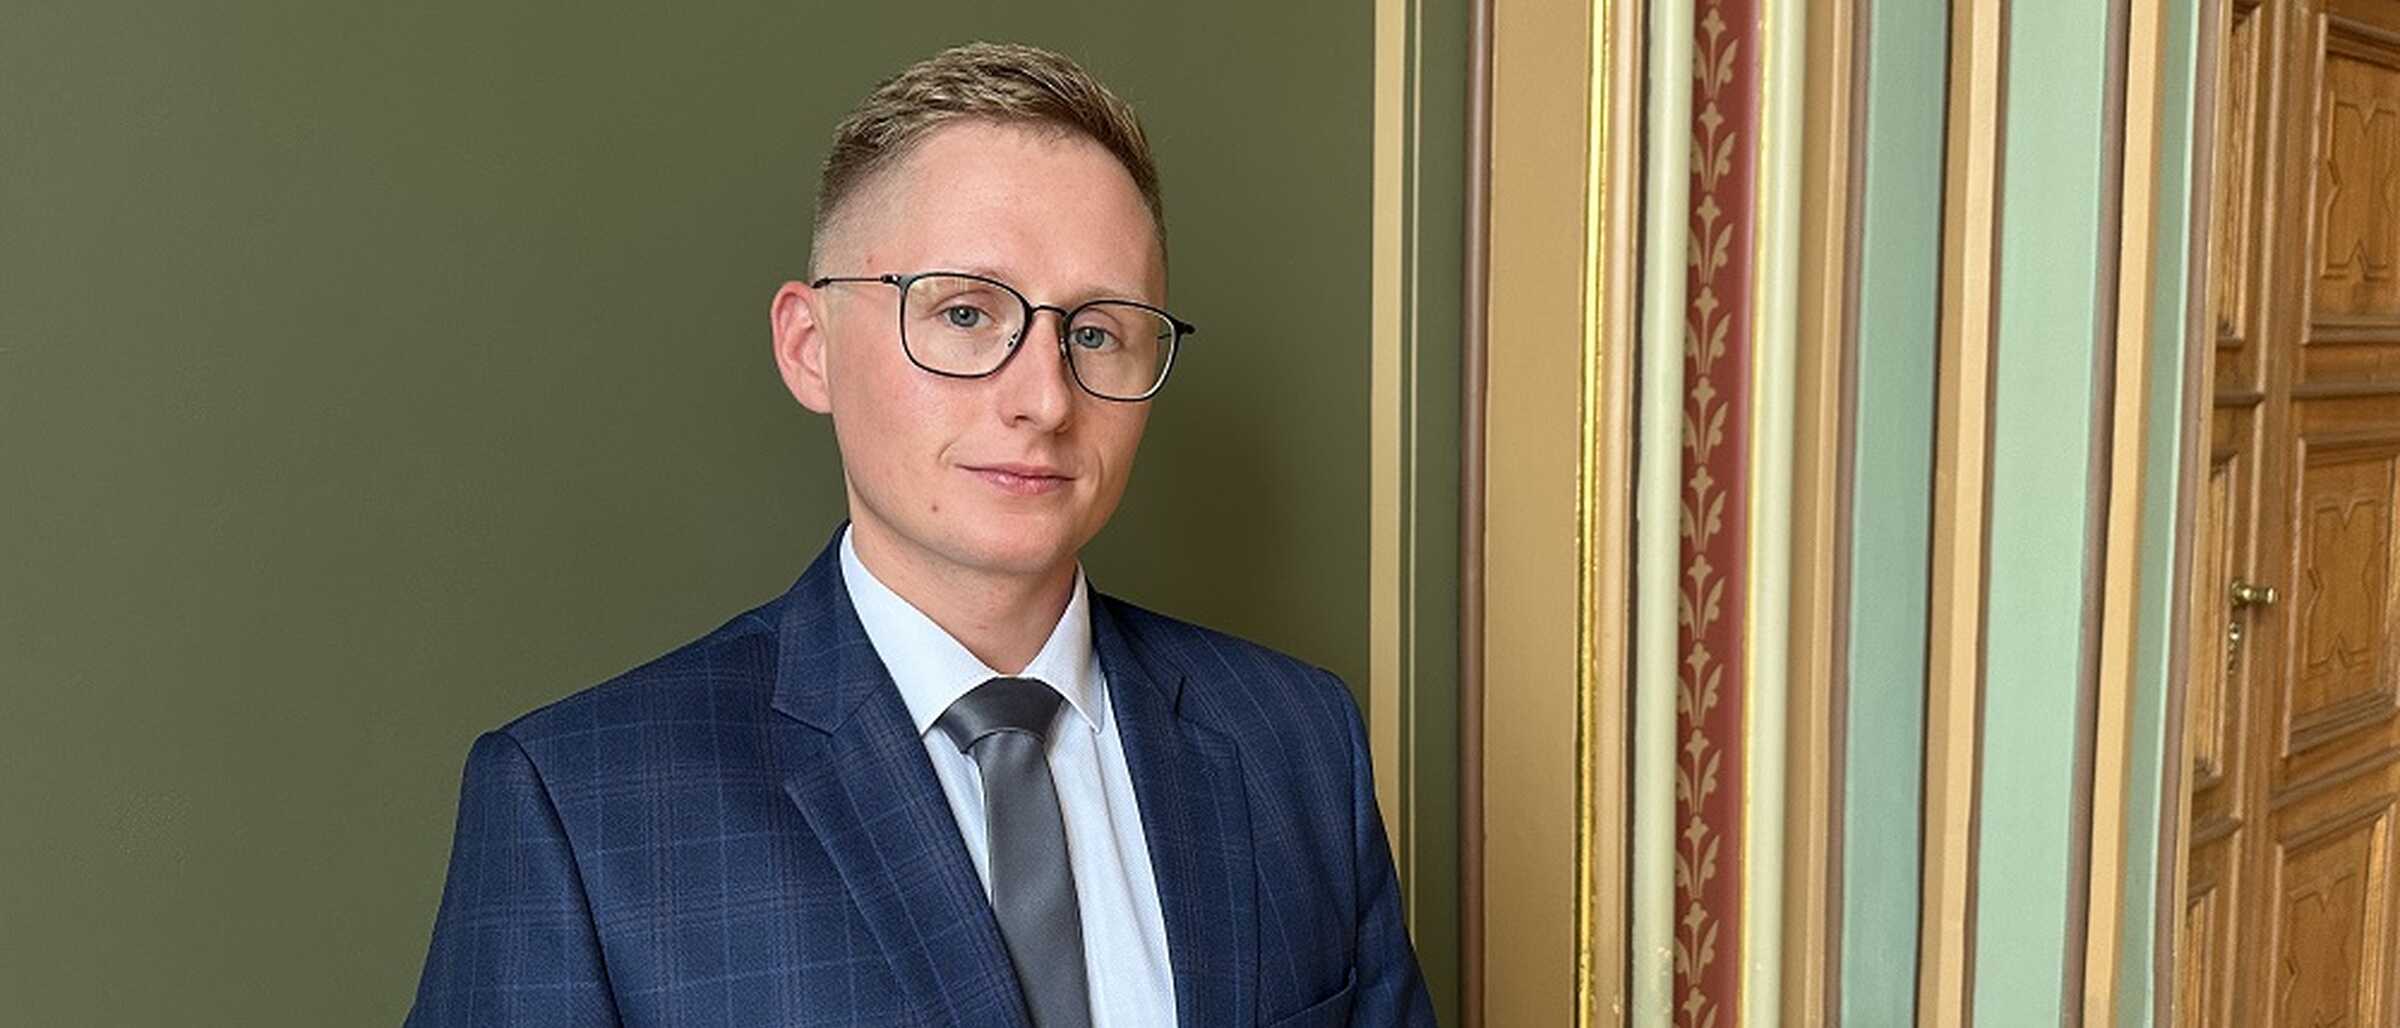 Neuer Büroleiter und Referent des Oberbürgermeisters Herr Łukasz Witków